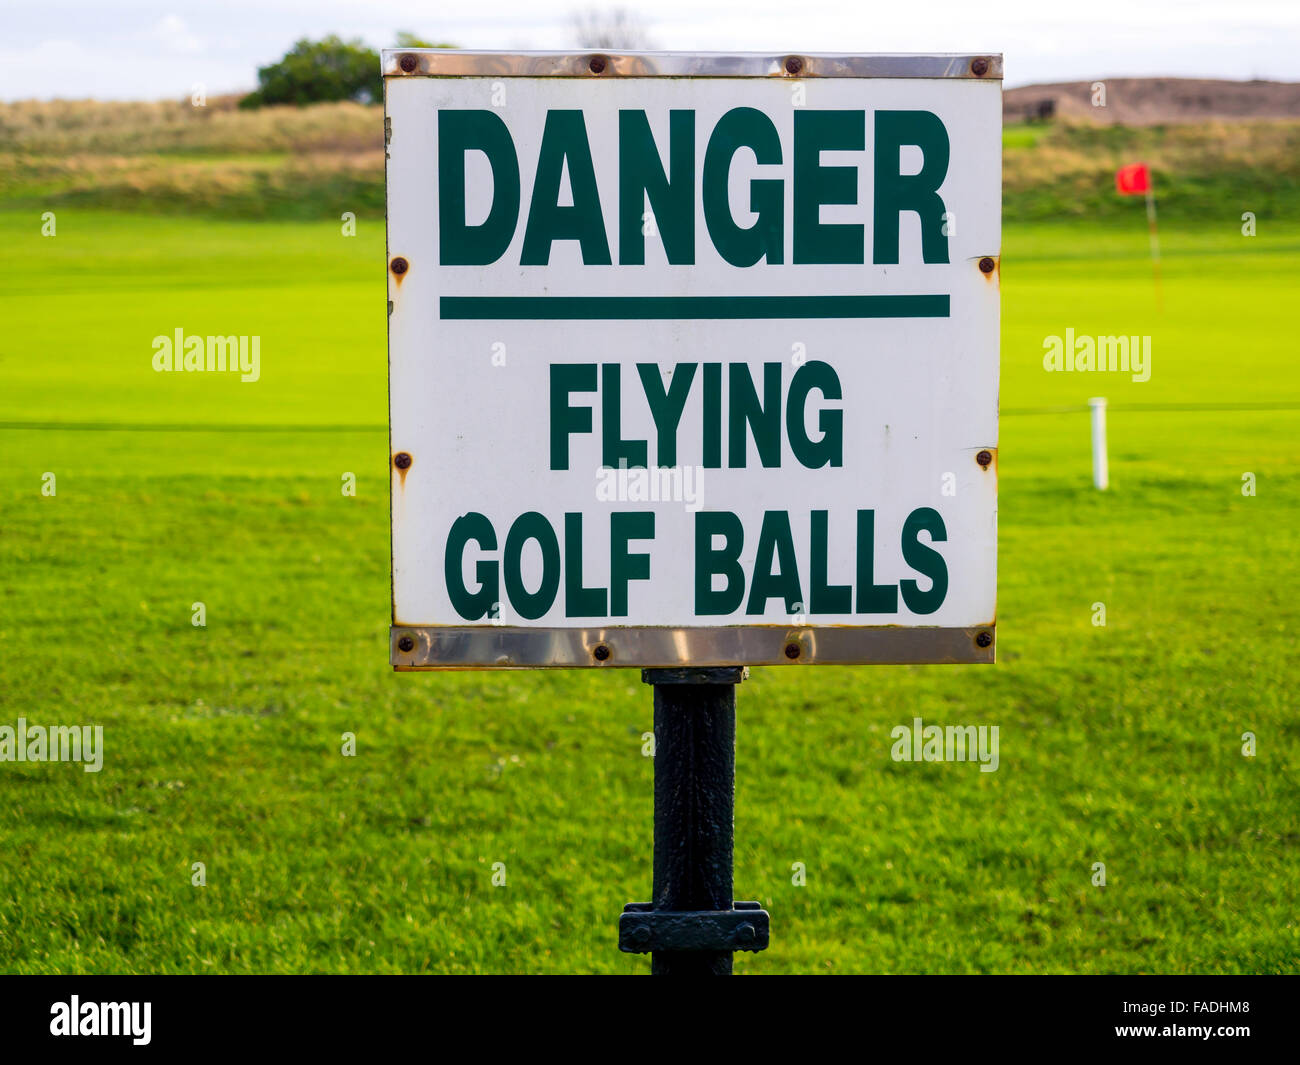 Danger flying golf balls sign Stock Photo